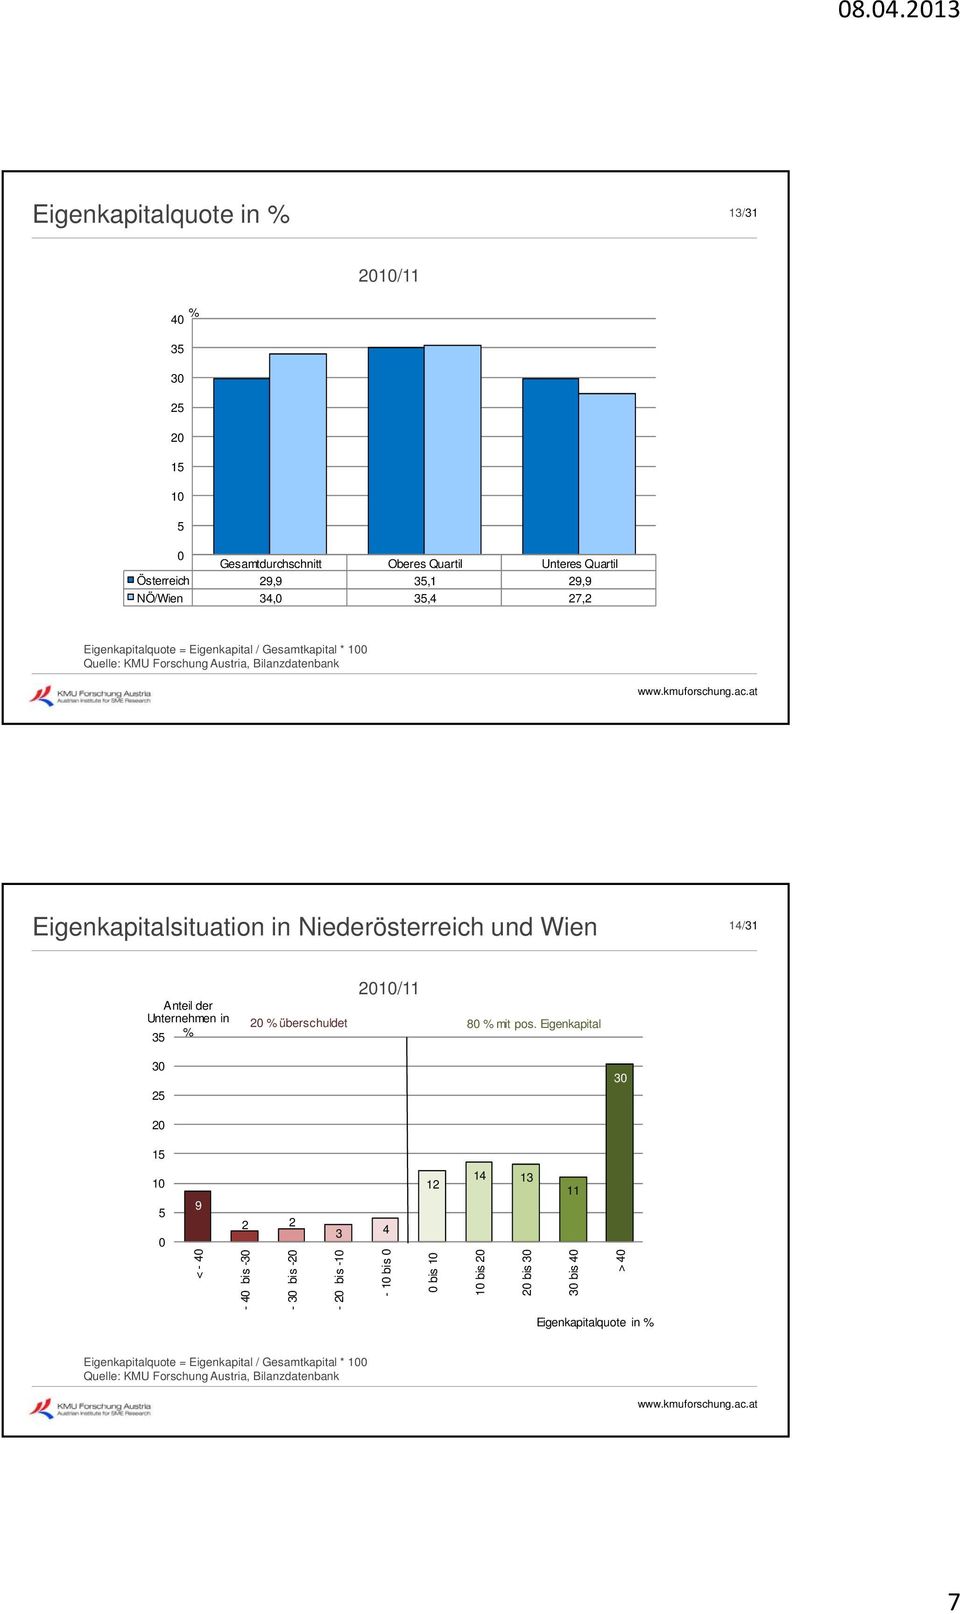 Wien 14/31 Anteil der Unternehmen in 3 2/11 2 überschuldet 8 mit pos.